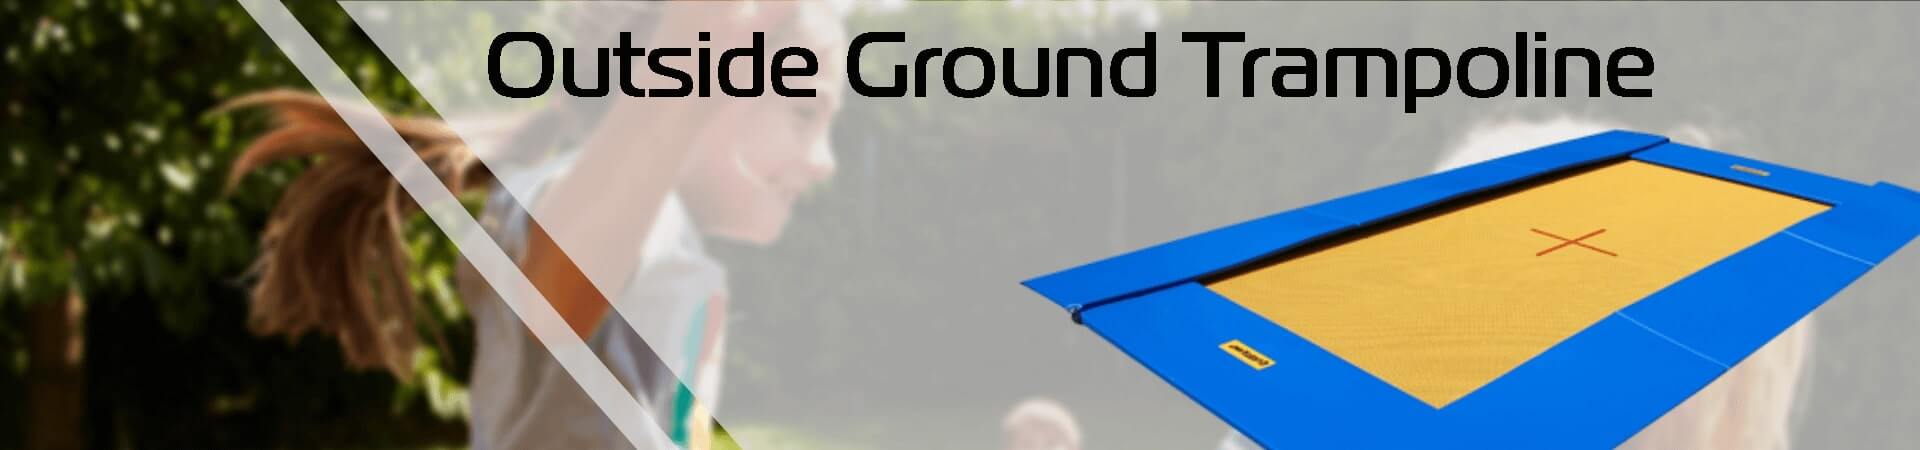 Eurotramp Ground Trampoline | Garden Trampoline | Gymaid